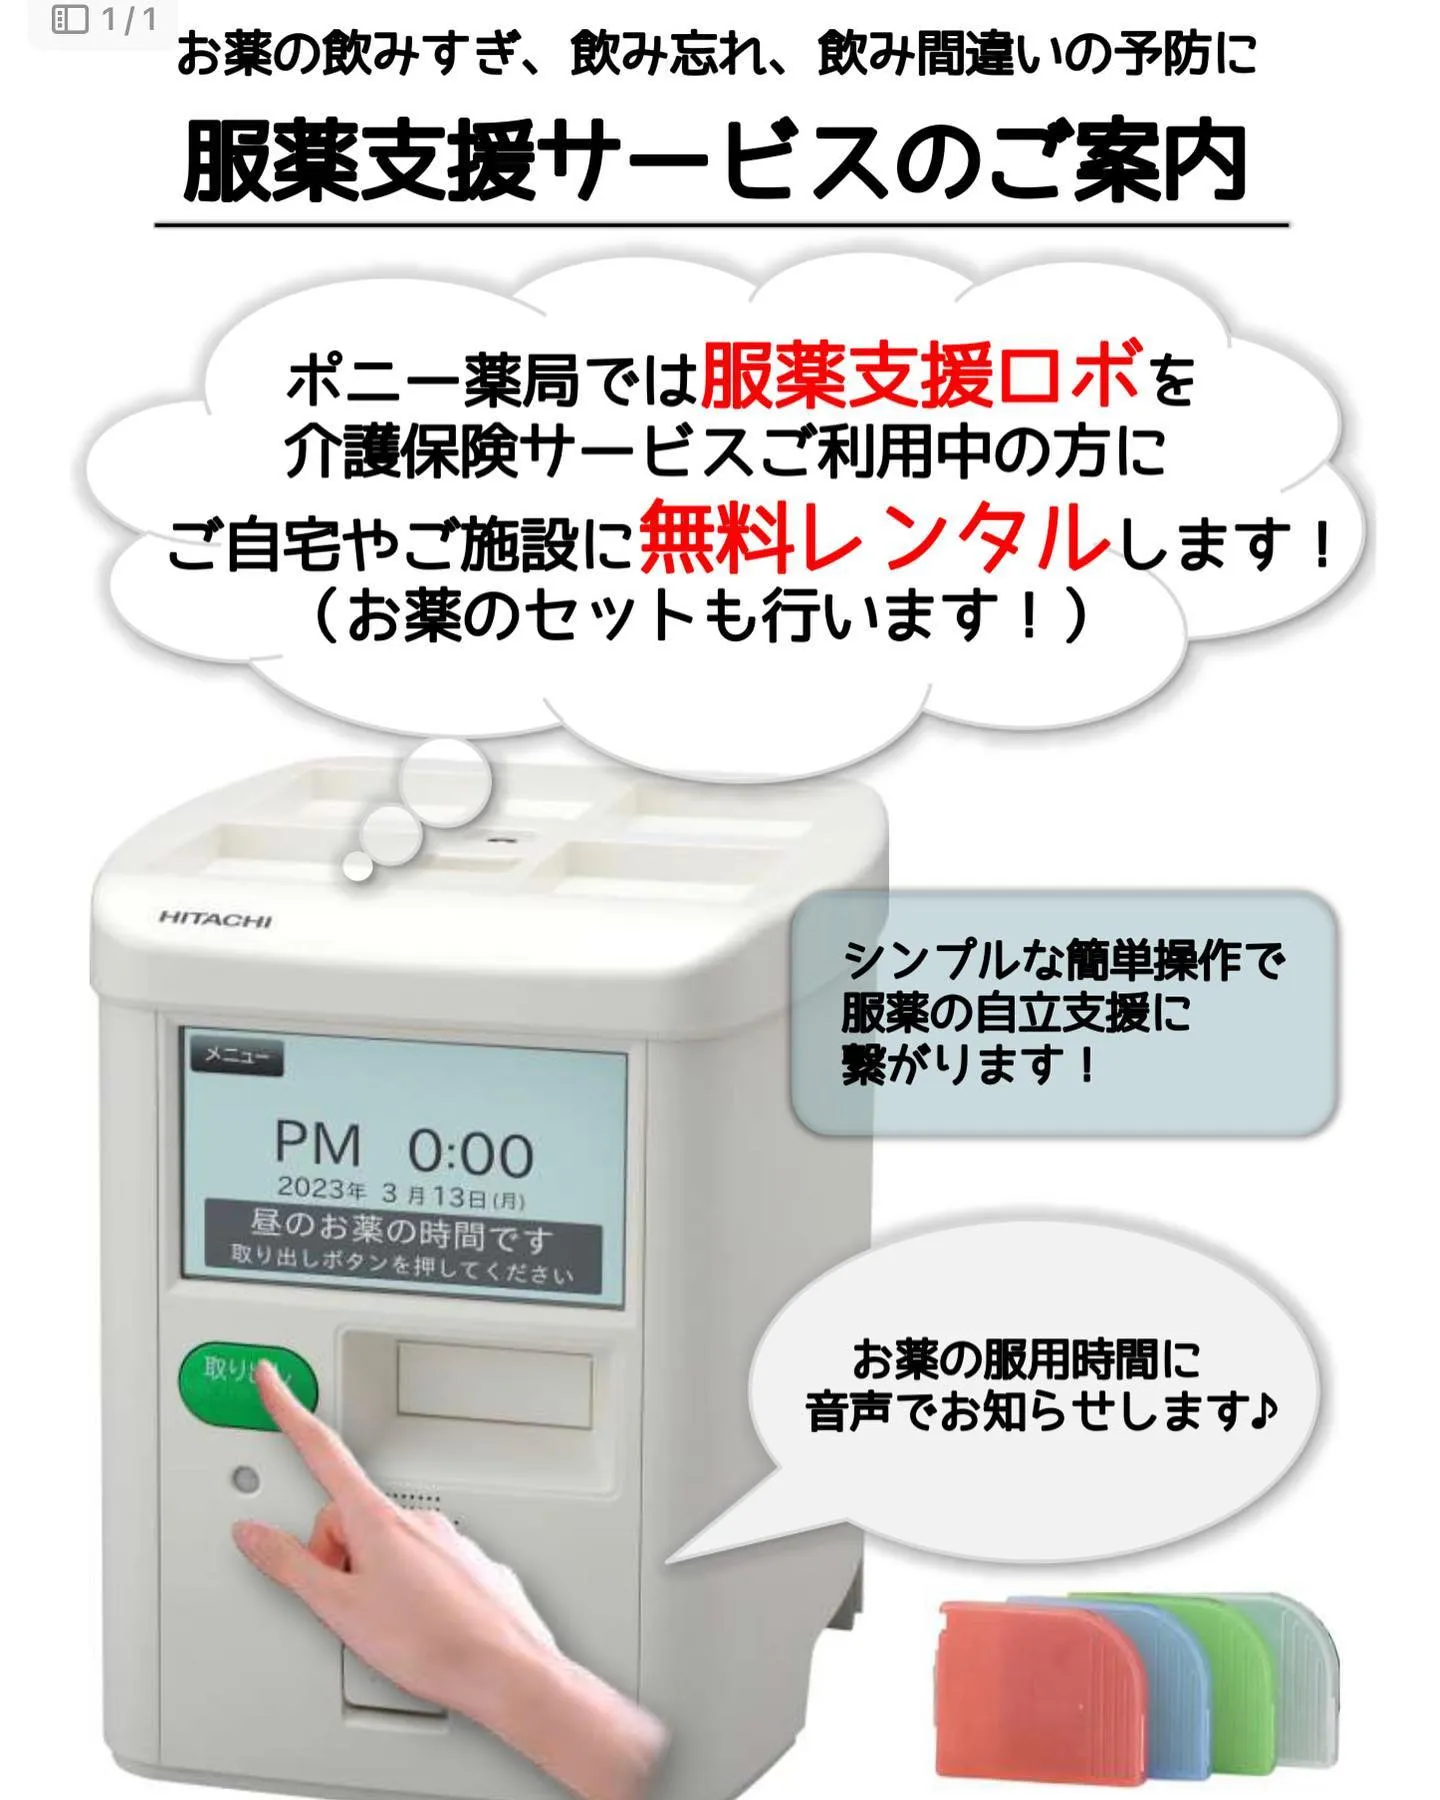 ポニー薬局長田店では【服薬支援ロボ】を活用した新たな服薬支援...